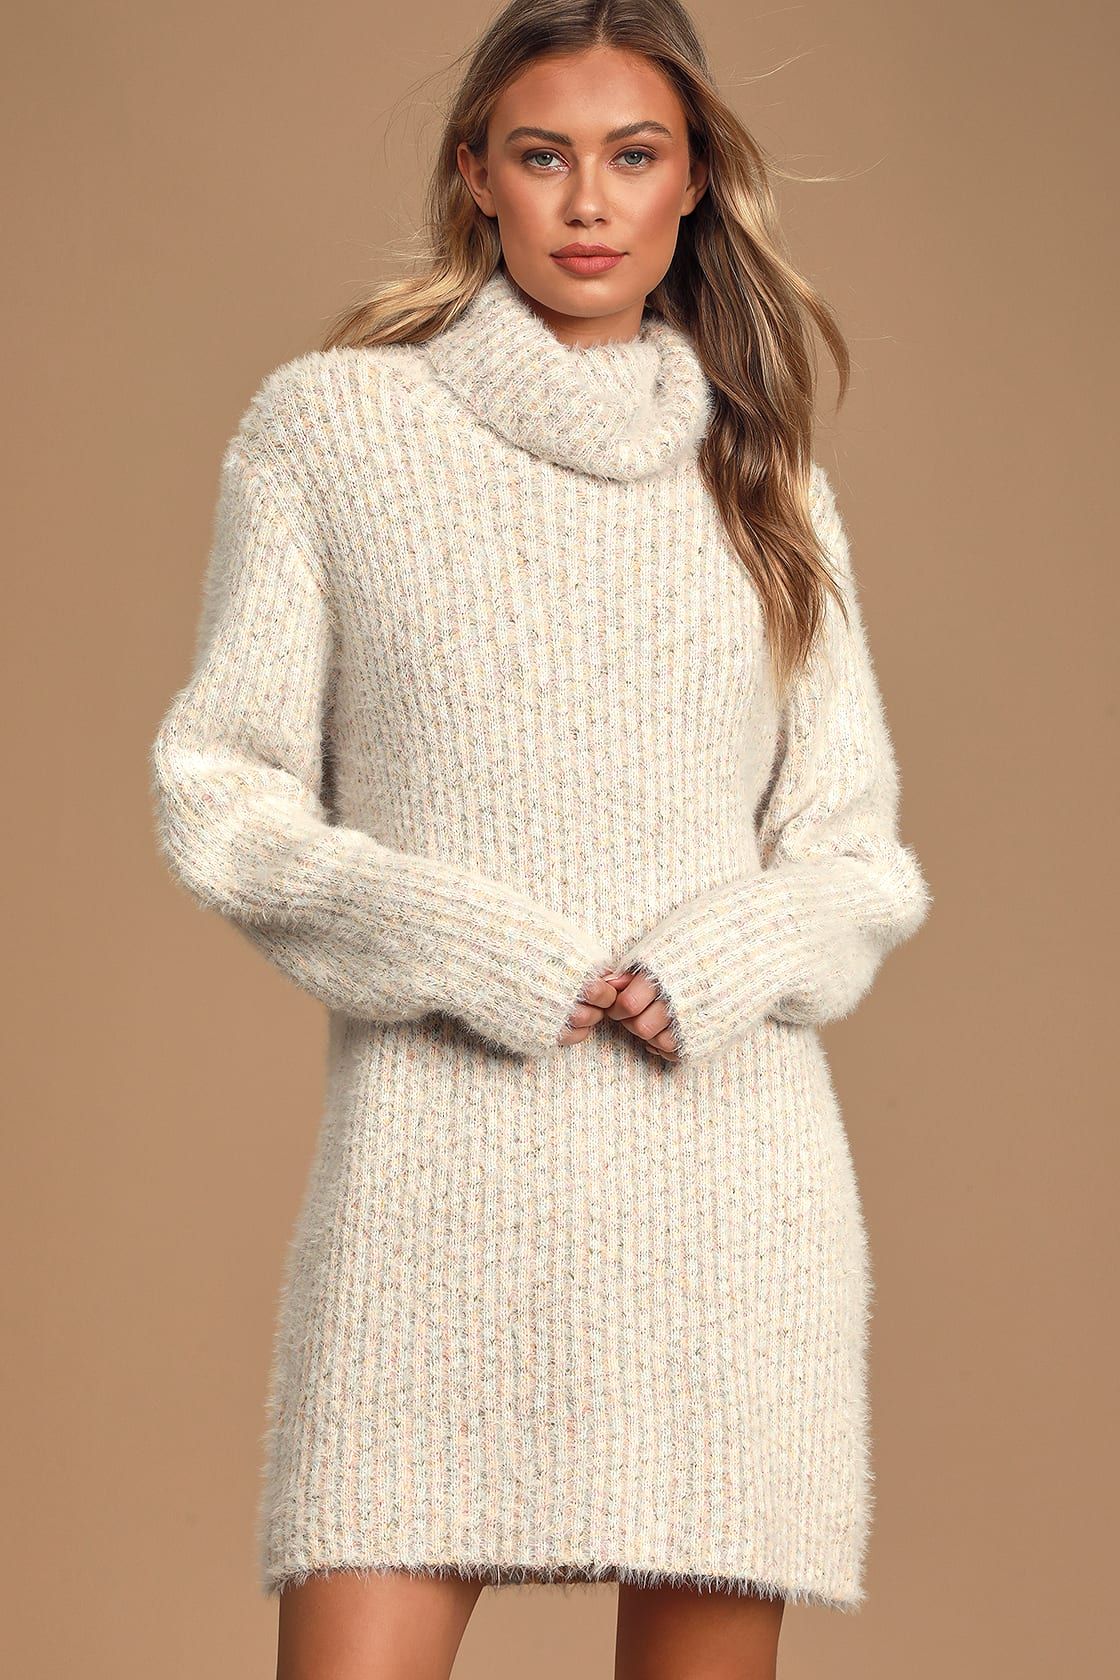 Sweet Whispers Ivory Multi Eyelash Knit Turtleneck Sweater Dress | Lulus (US)